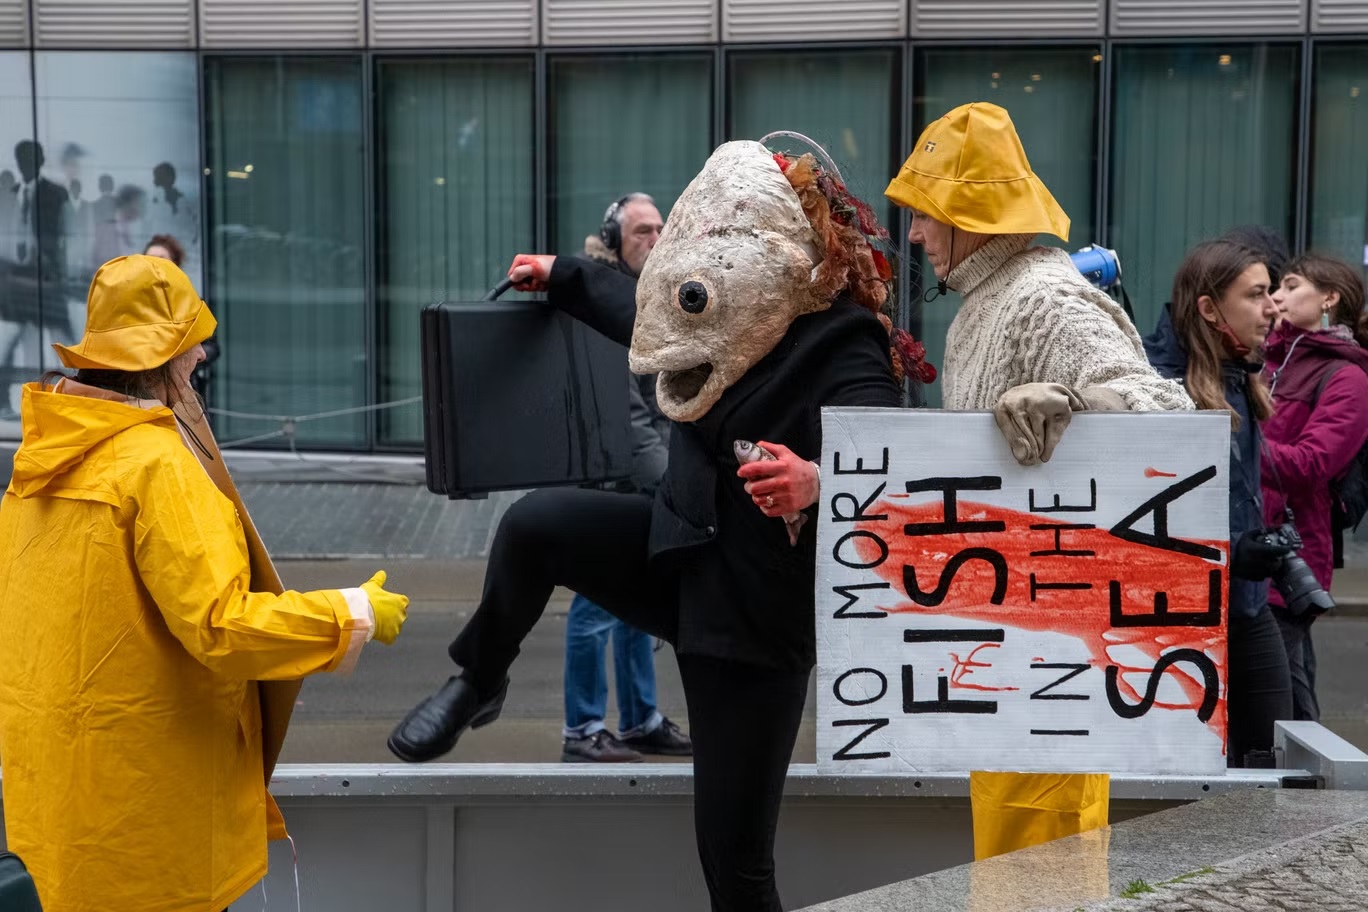 متظاهرو حملة "أوشيان ريبيليون" المناخية في بروكسل. حذر العلماء من أن ارتفاع درجة حرارة المياه يتسبب في نشوء "مناطق ميتة" في البحر (أ ف ب عبر غيتي)